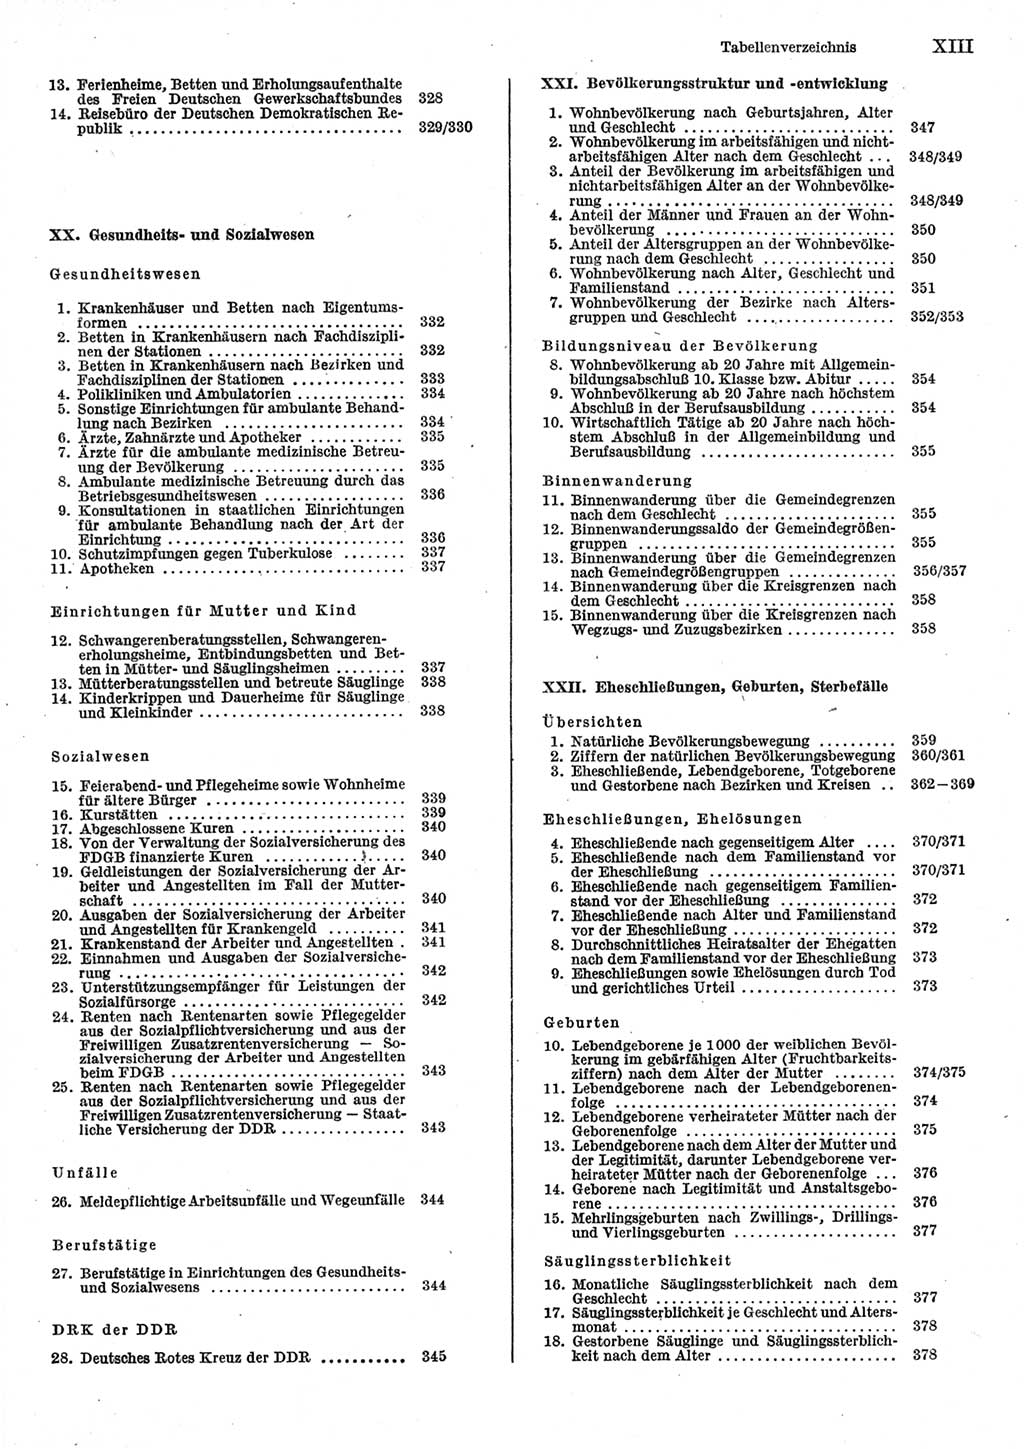 Statistisches Jahrbuch der Deutschen Demokratischen Republik (DDR) 1985, Seite 13 (Stat. Jb. DDR 1985, S. 13)